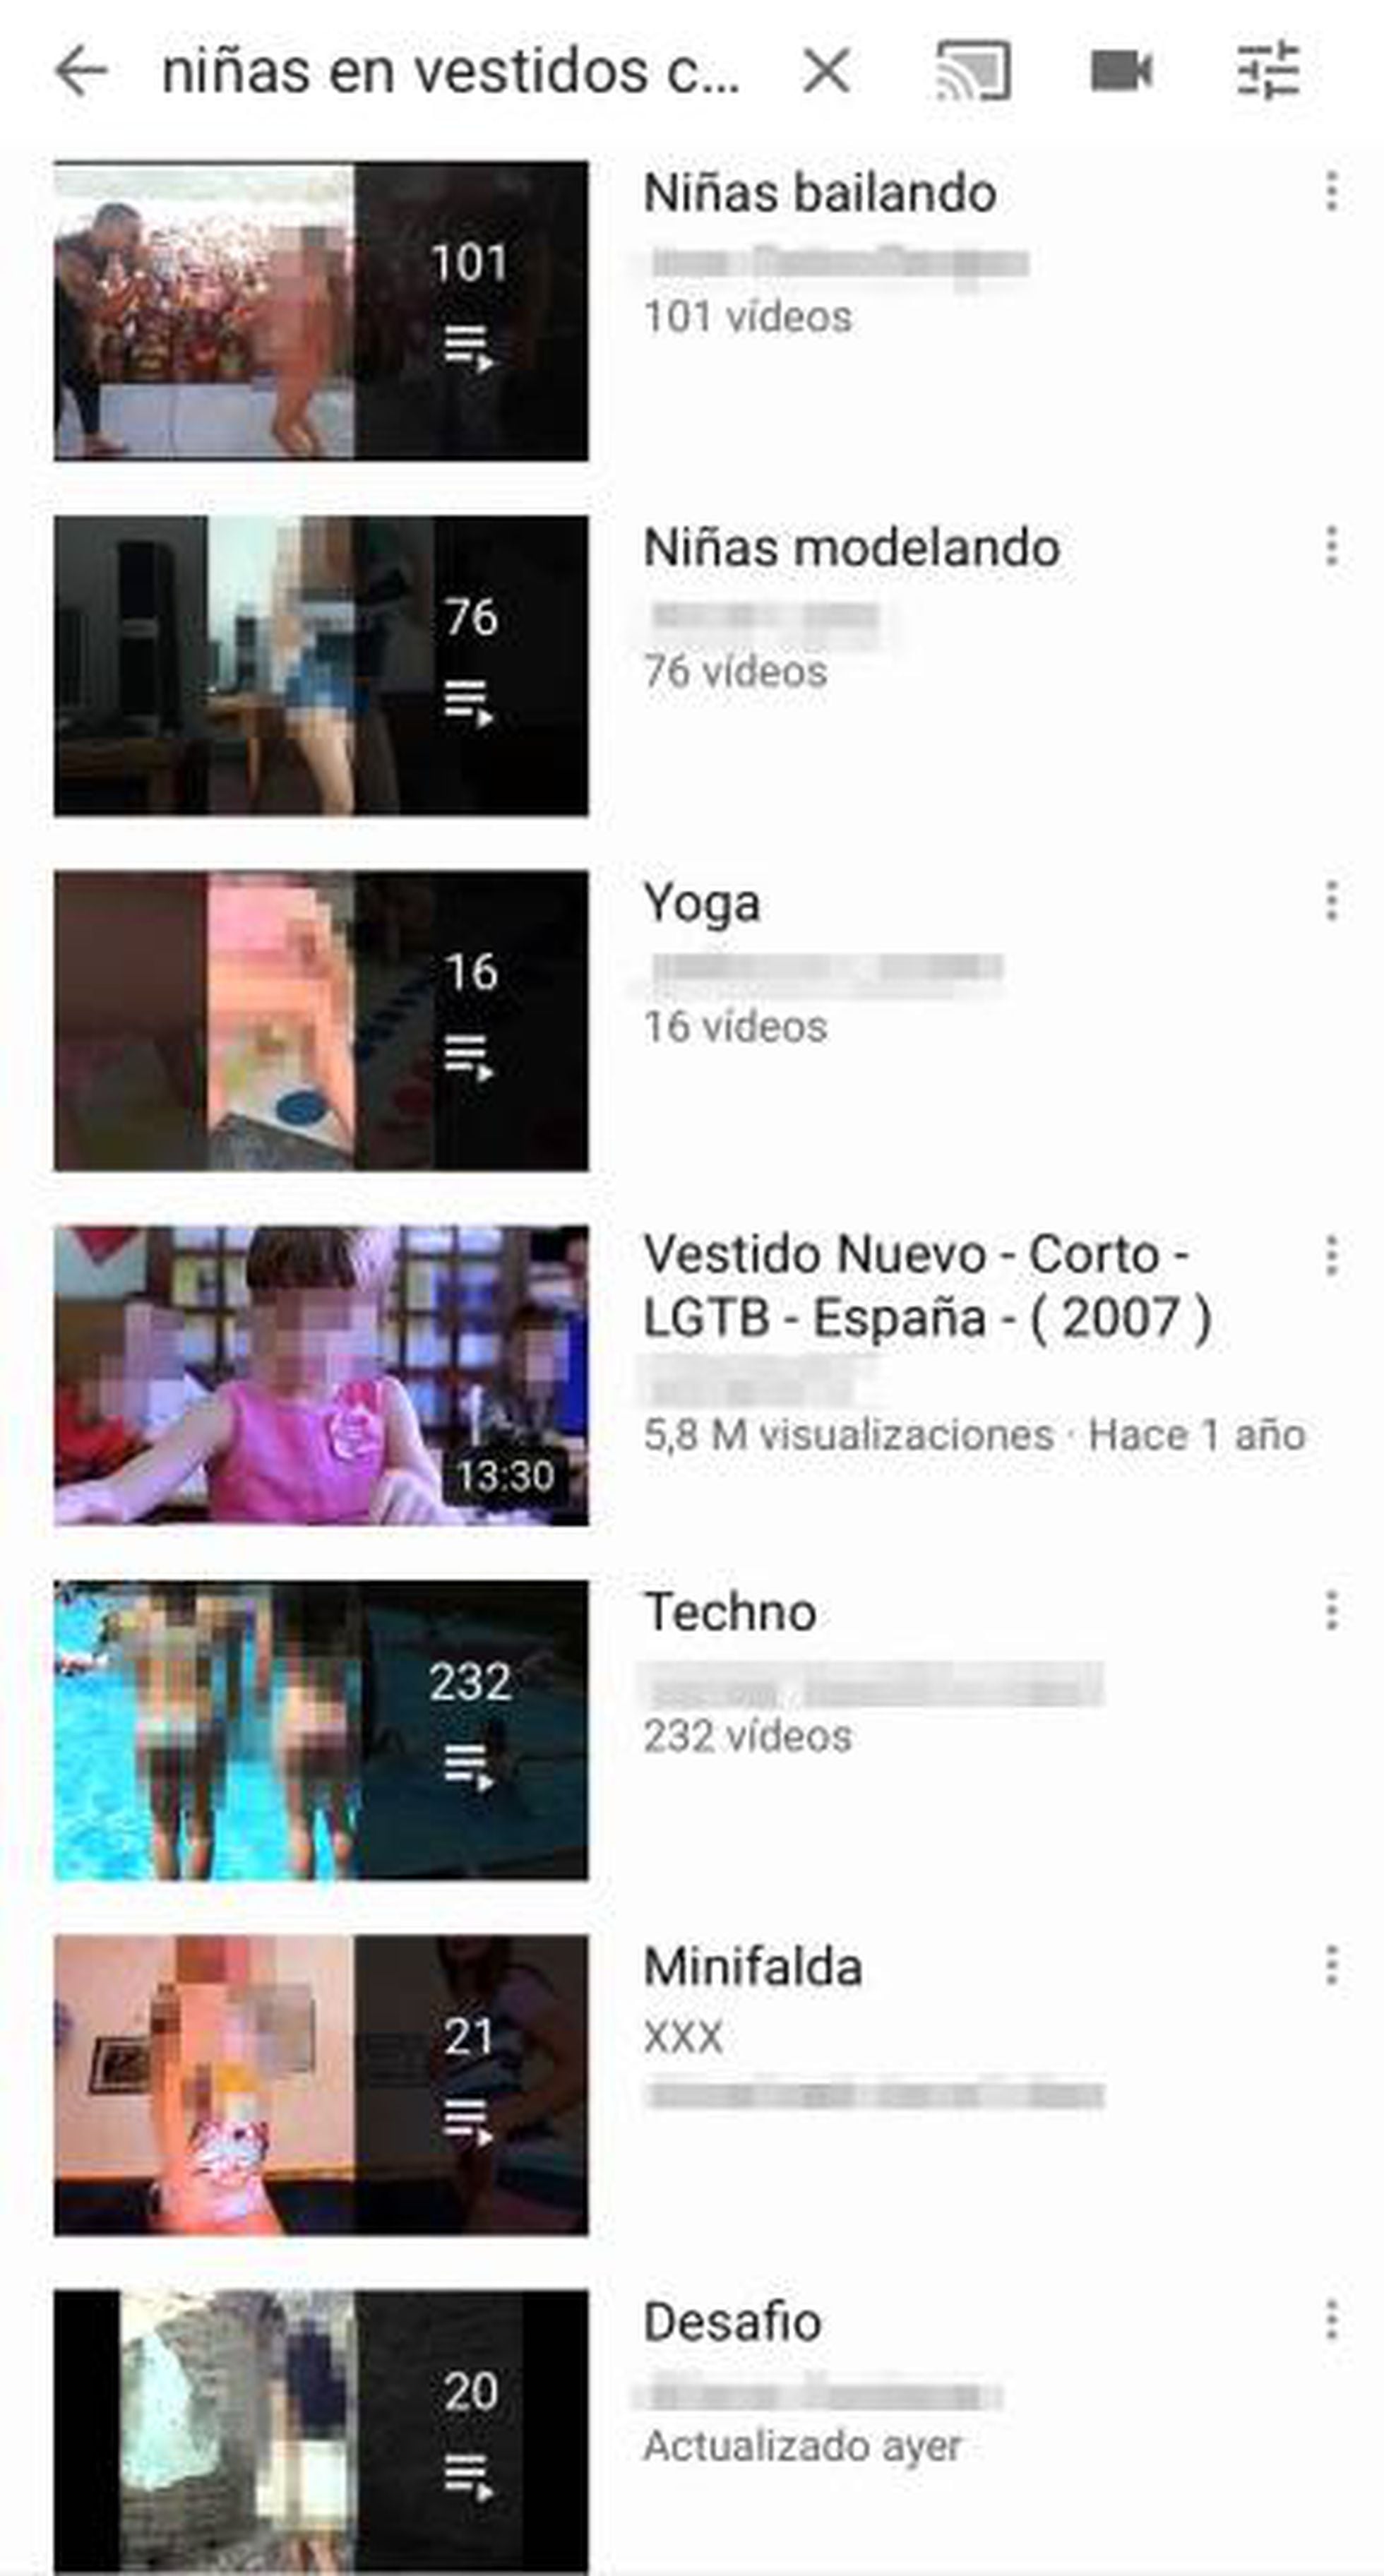 Asi Acaba El Video Inocente De Una Nina En Una Lista Erotica De Youtube Tecnologia El Pais